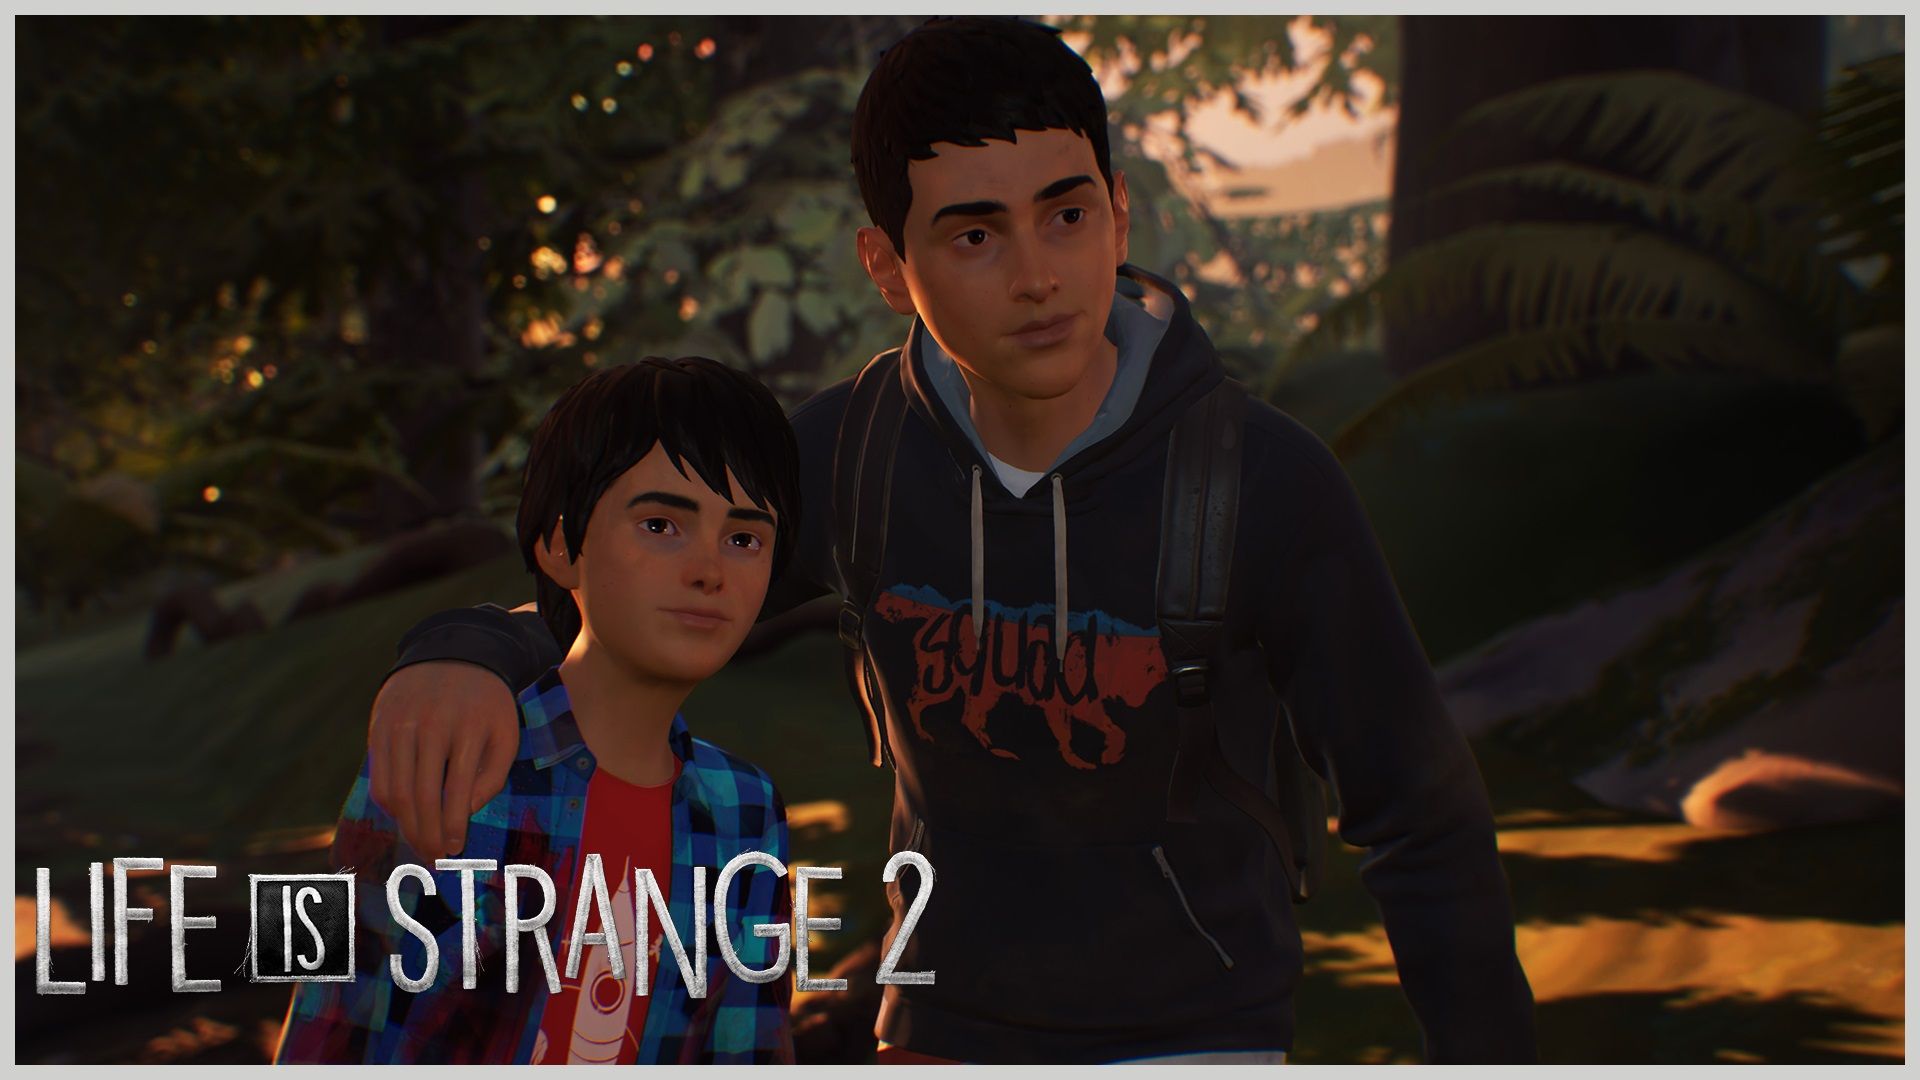 Primer episodio de Life is Strange 2 ya está disponible!